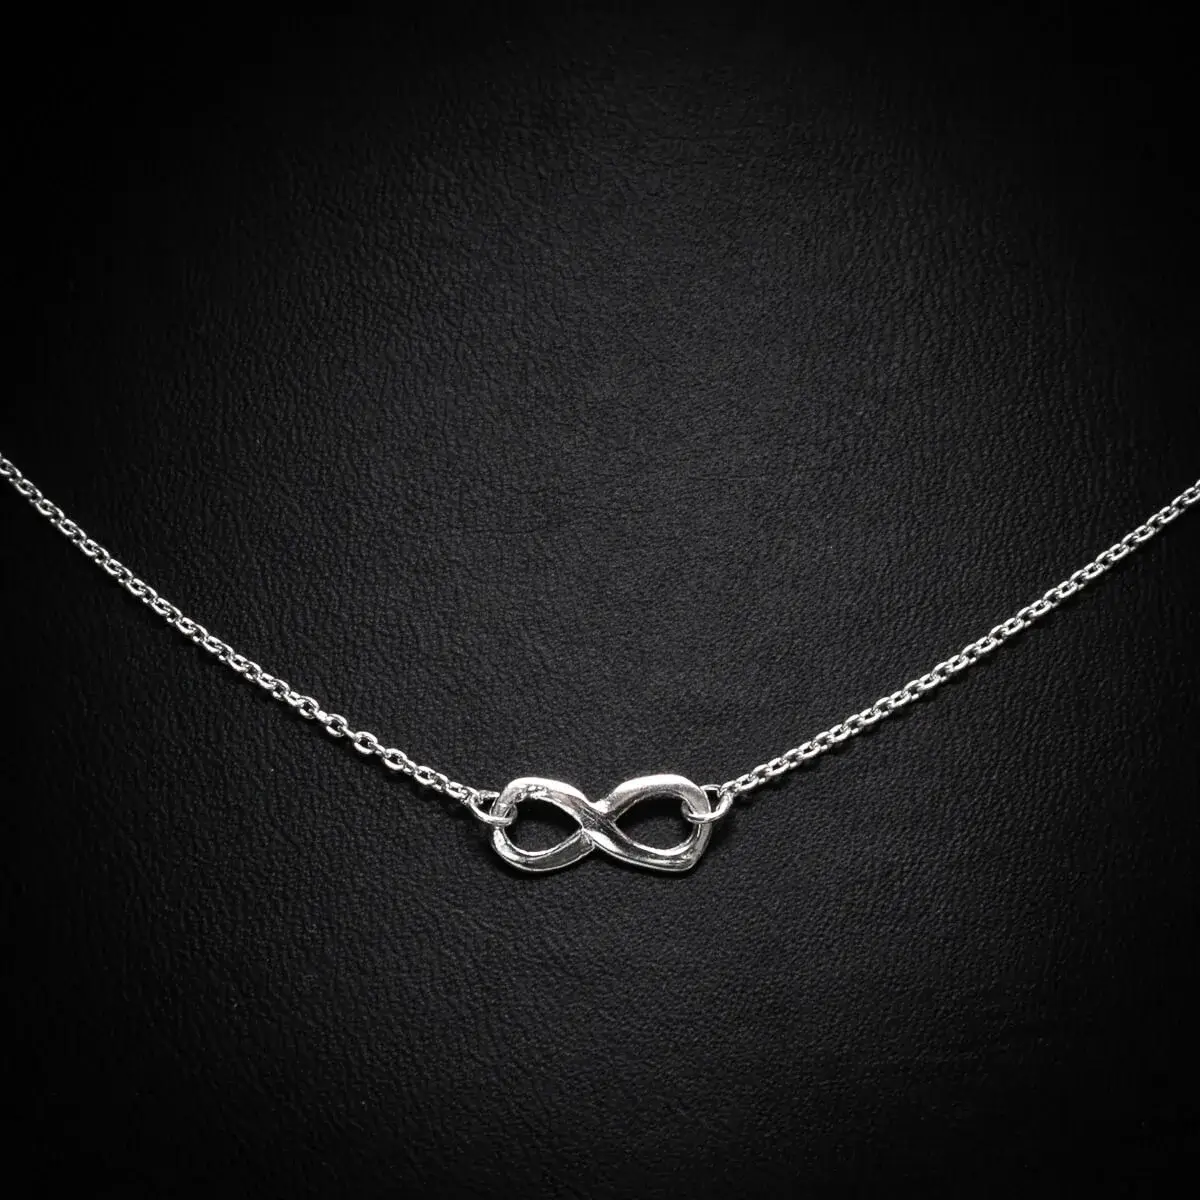 Ogrlica Beskonačnosti sa znakom infinity od 925 srebra je izraz večne elegancije. Ovaj tanak lanac nežno nosi simbol beskonačnosti, izrađen od visokokvalitetnog srebra. Ova ogrlica je ne samo komad nakita, već i podsećanje na bezvremensku ljubav, večnu sreću i beskrajne mogućnosti.